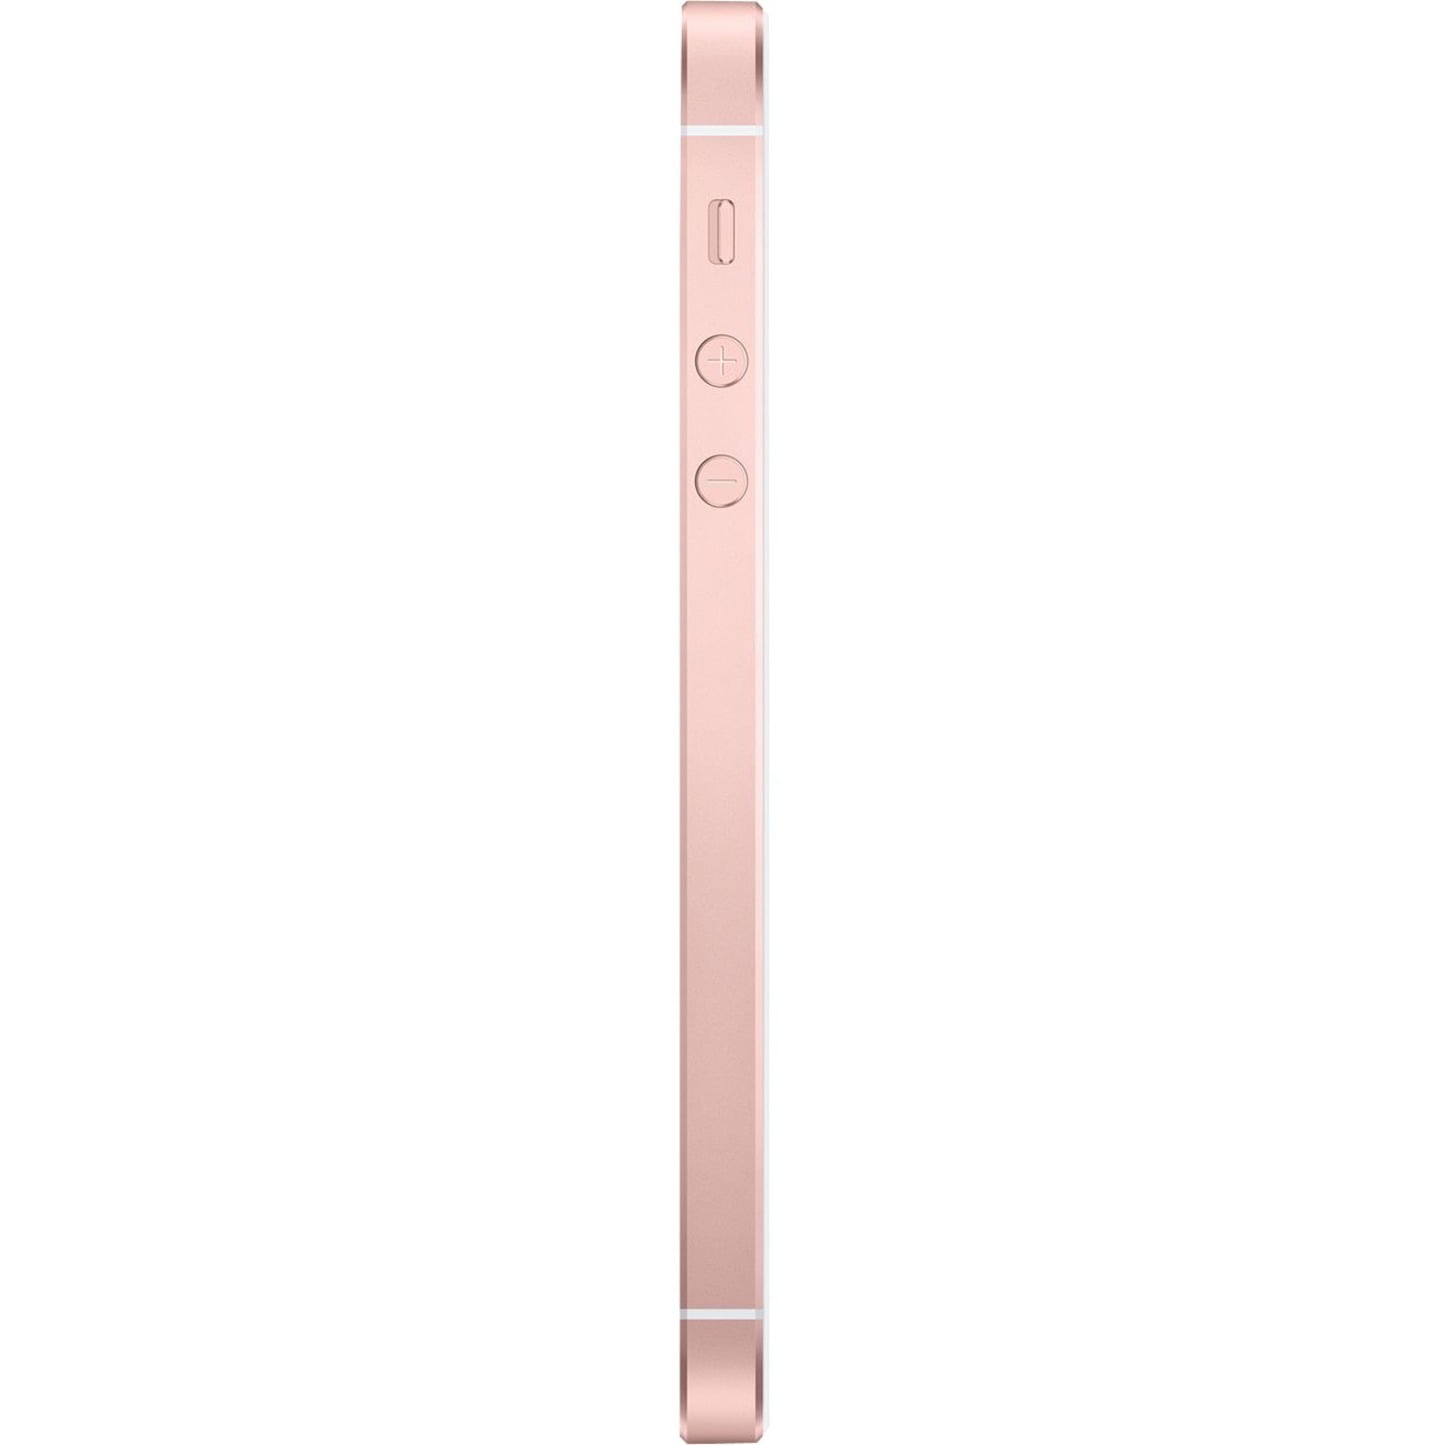 Restored Apple iPhone SE 32GB, Rose Gold - Locked T-Mobile (Refurbished)